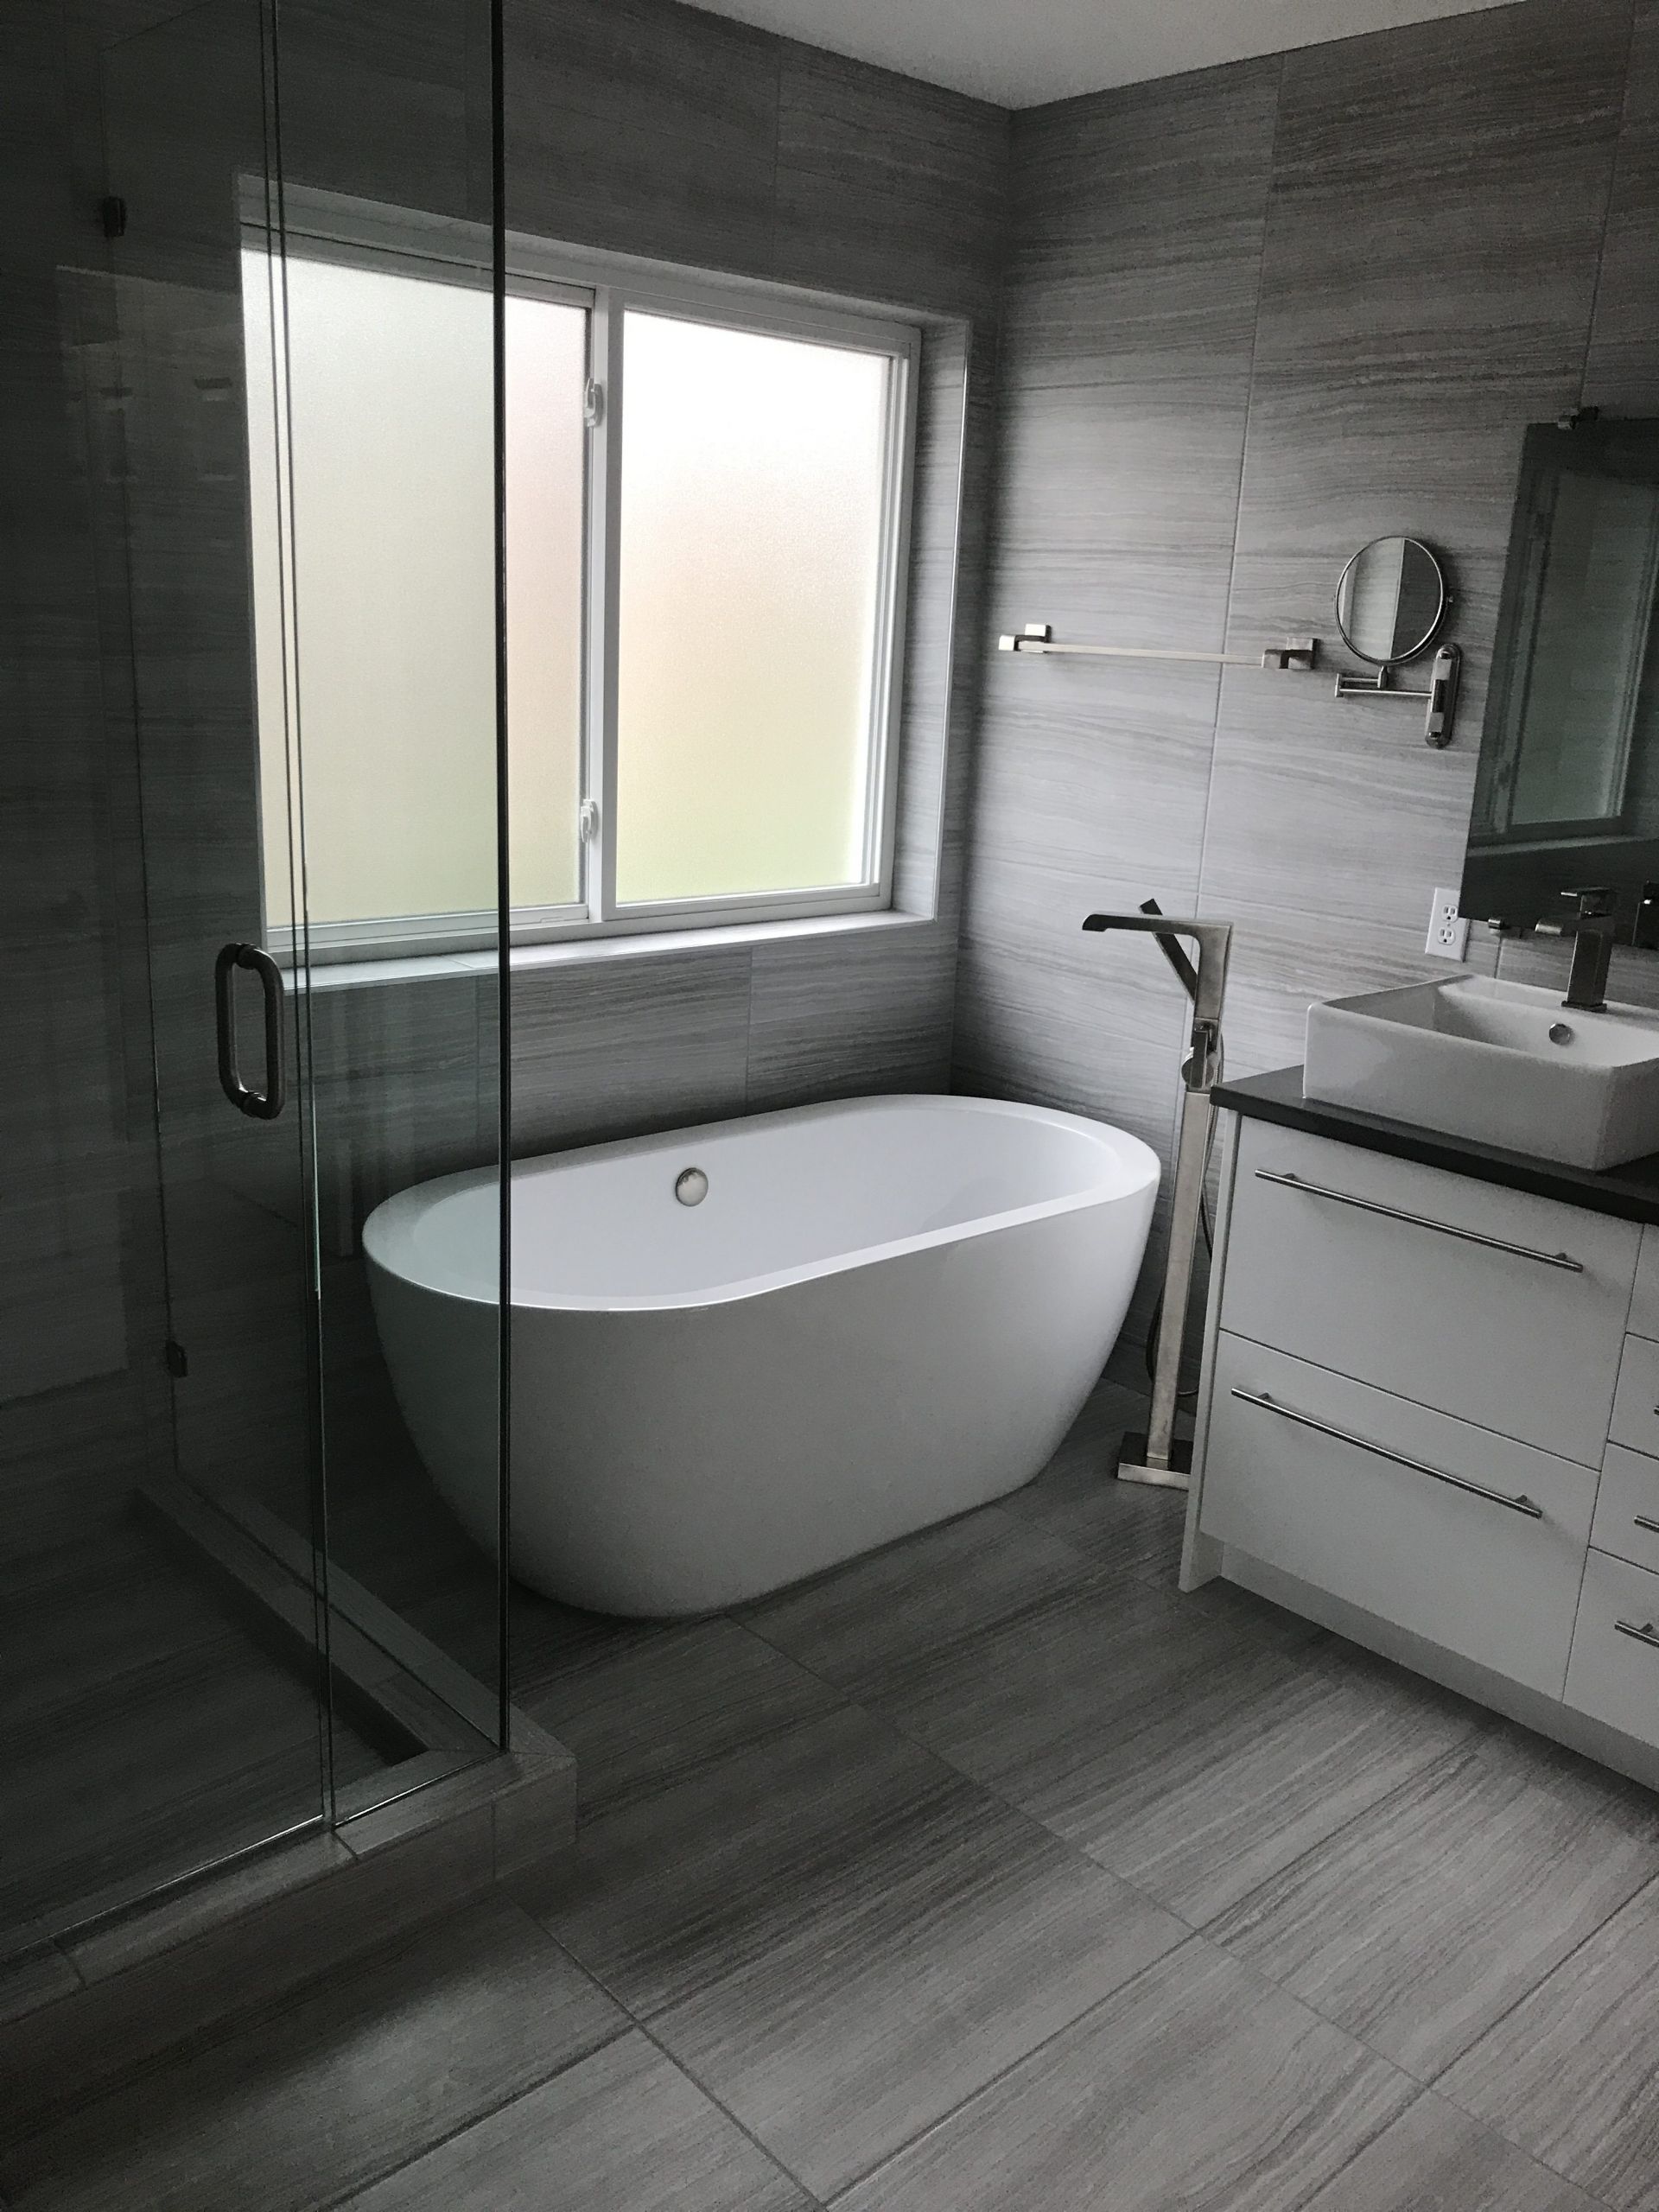 Residential Bathroom Remodeling
 Kitchen Remodels Bathroom Remodels & Home Additions